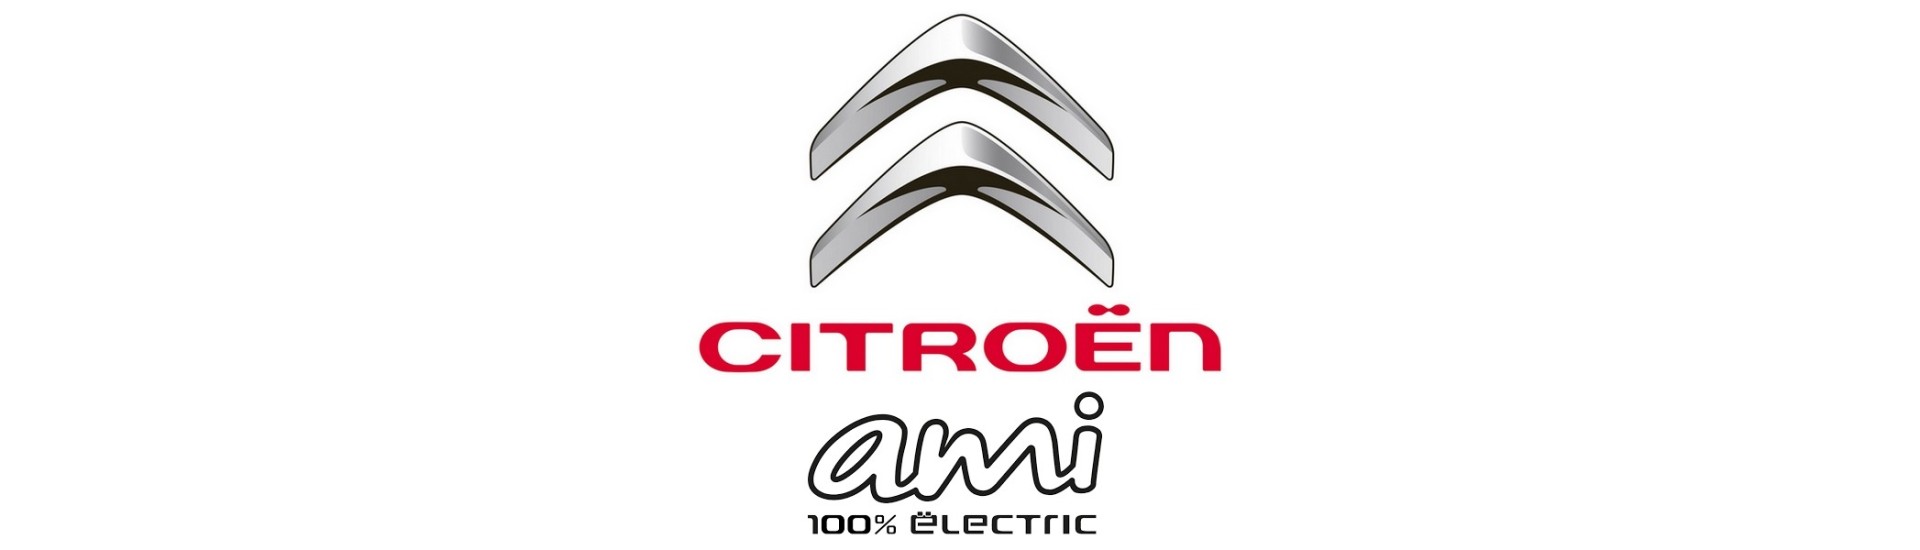 Flyg till bästa pris för bil utan tillstånd Citroën Ami